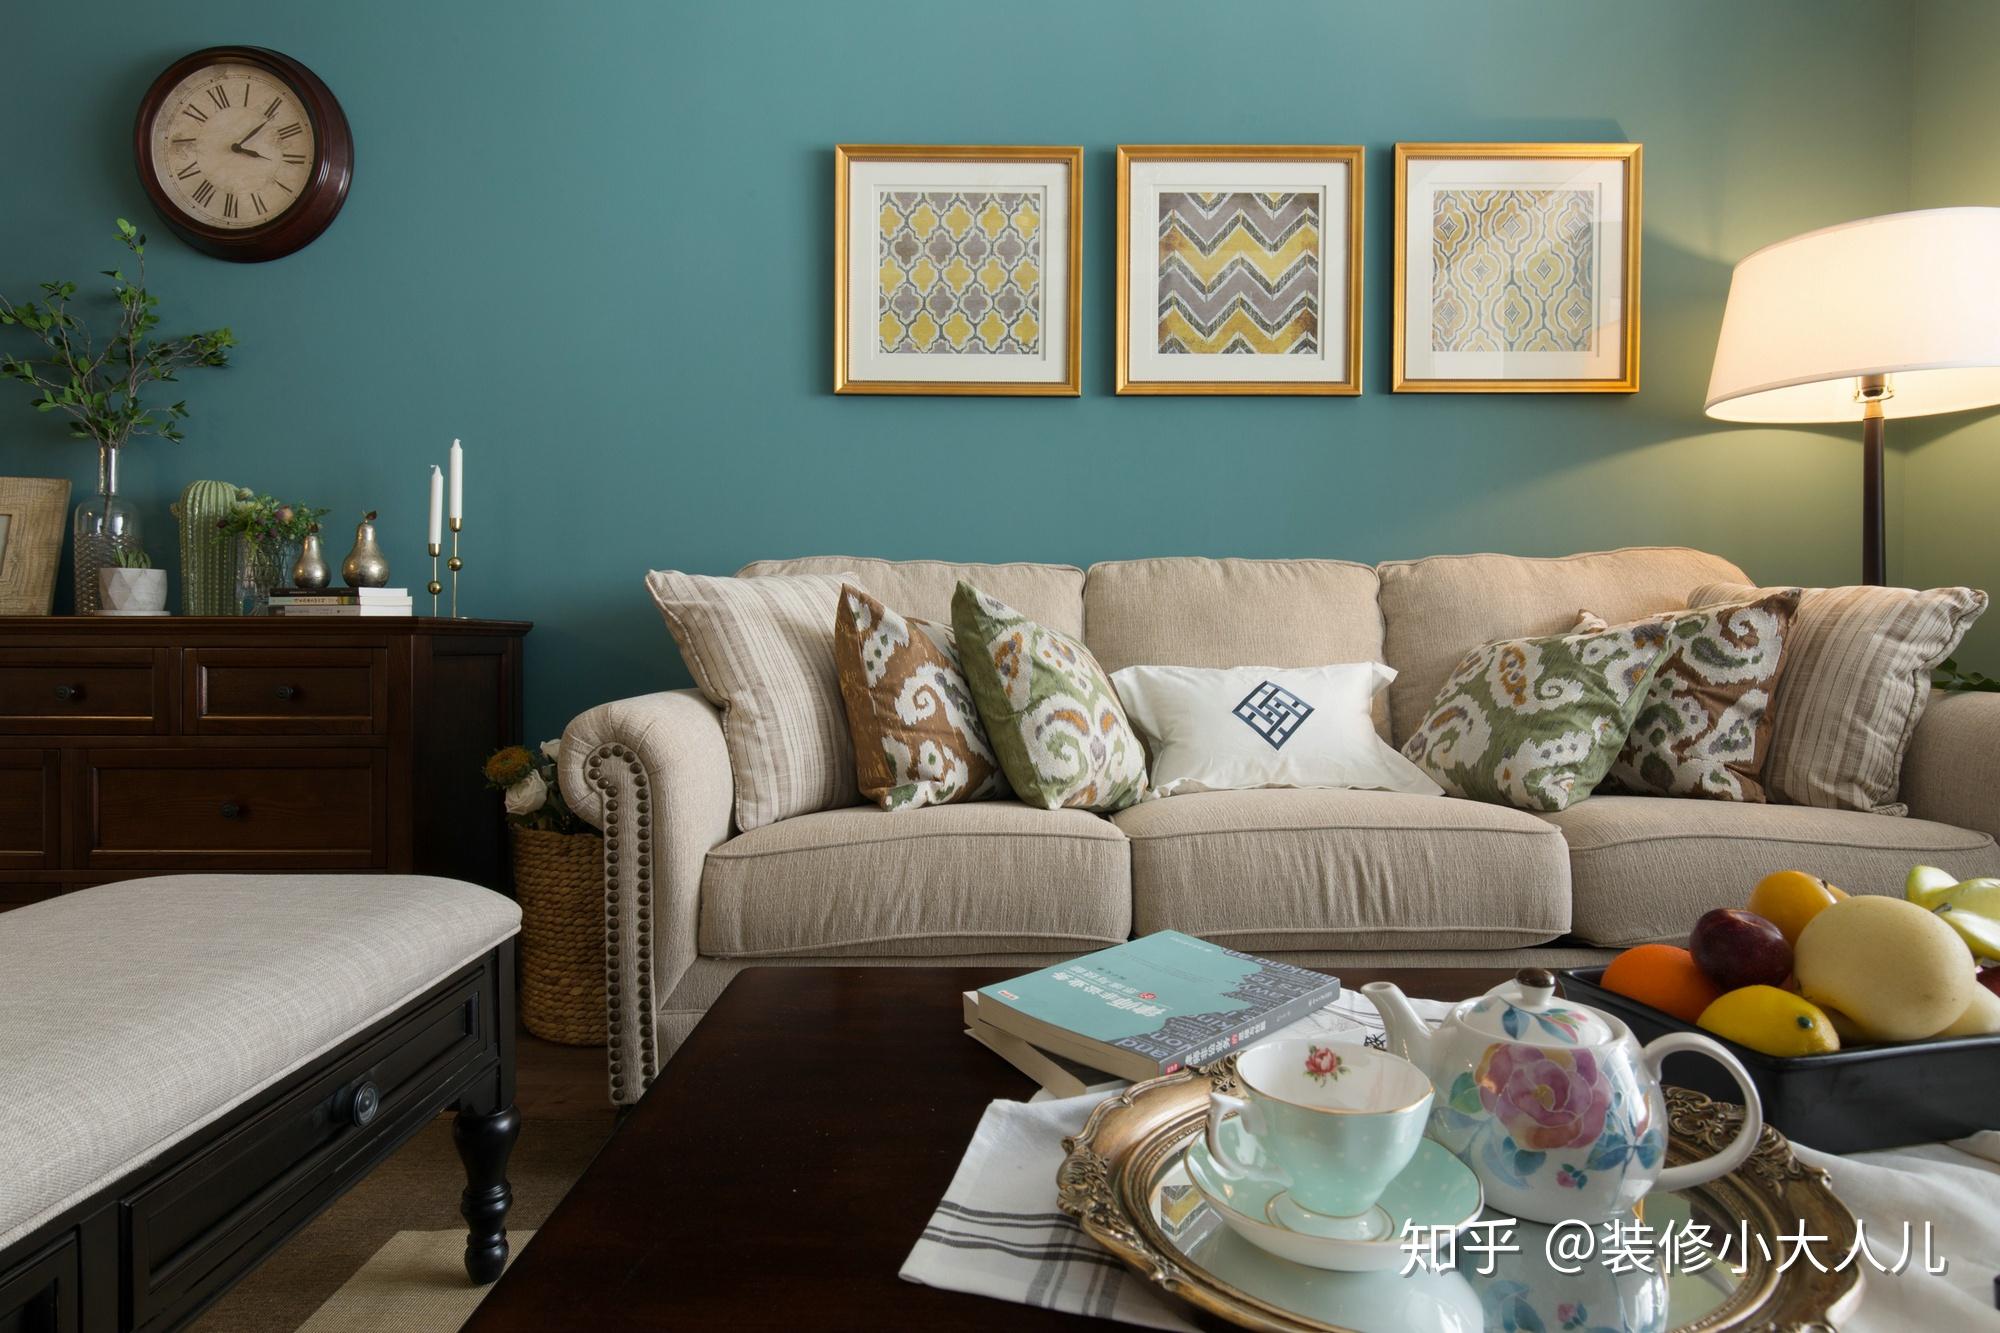 客厅乳胶漆颜色效果图 这几种室内乳胶漆颜色搭配效果超美→MAIGOO图库